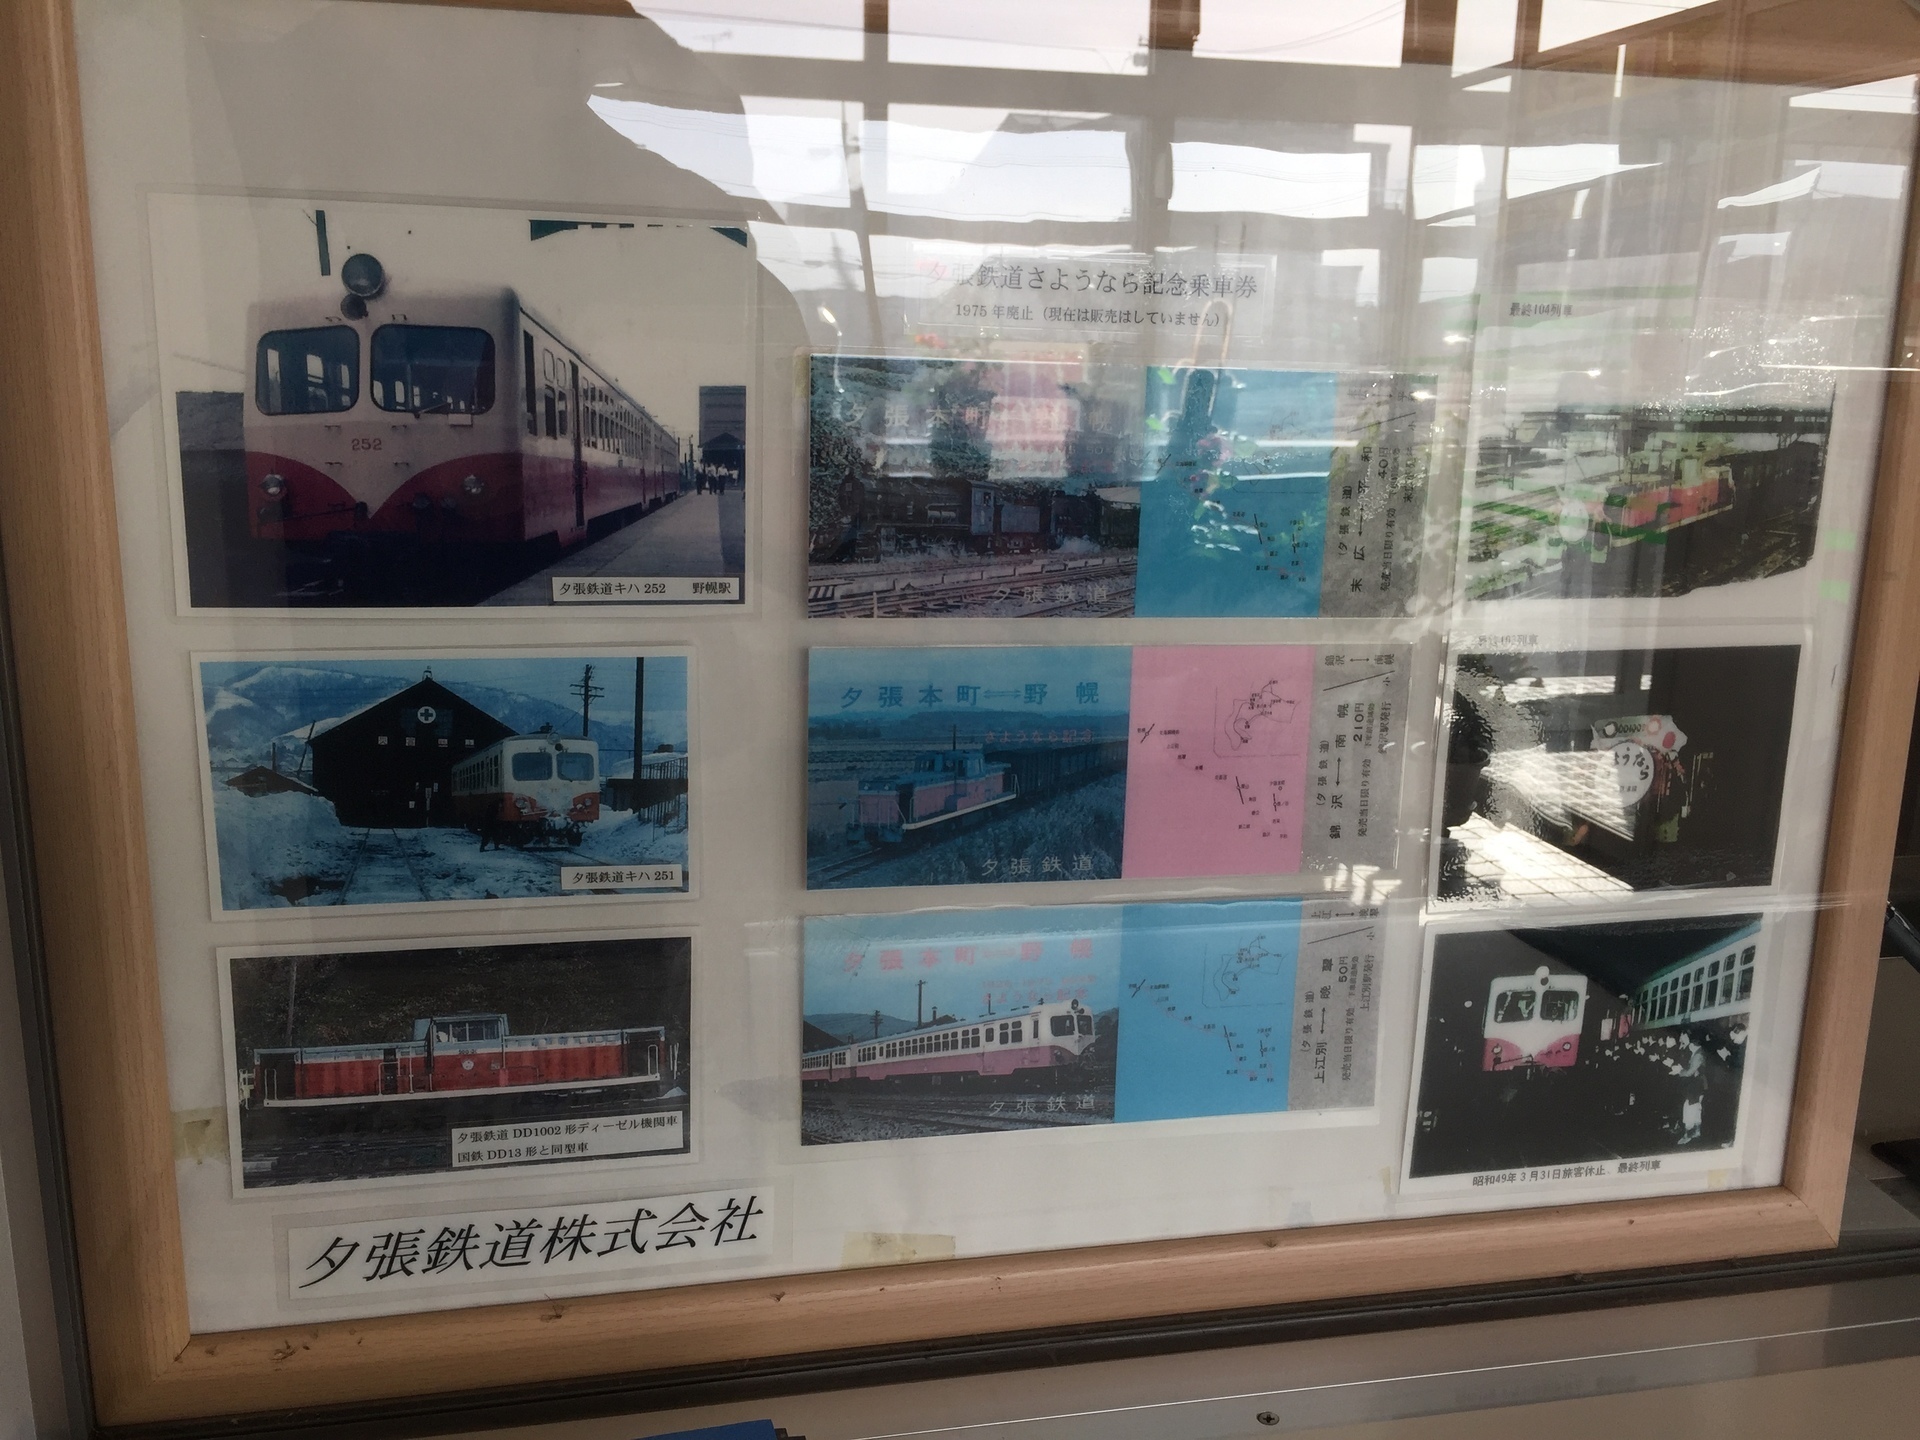 野幌にはバスターミナルと営業所が残り窓口には鉄道現役時代の写真や切符が飾られていた（筆者撮影）